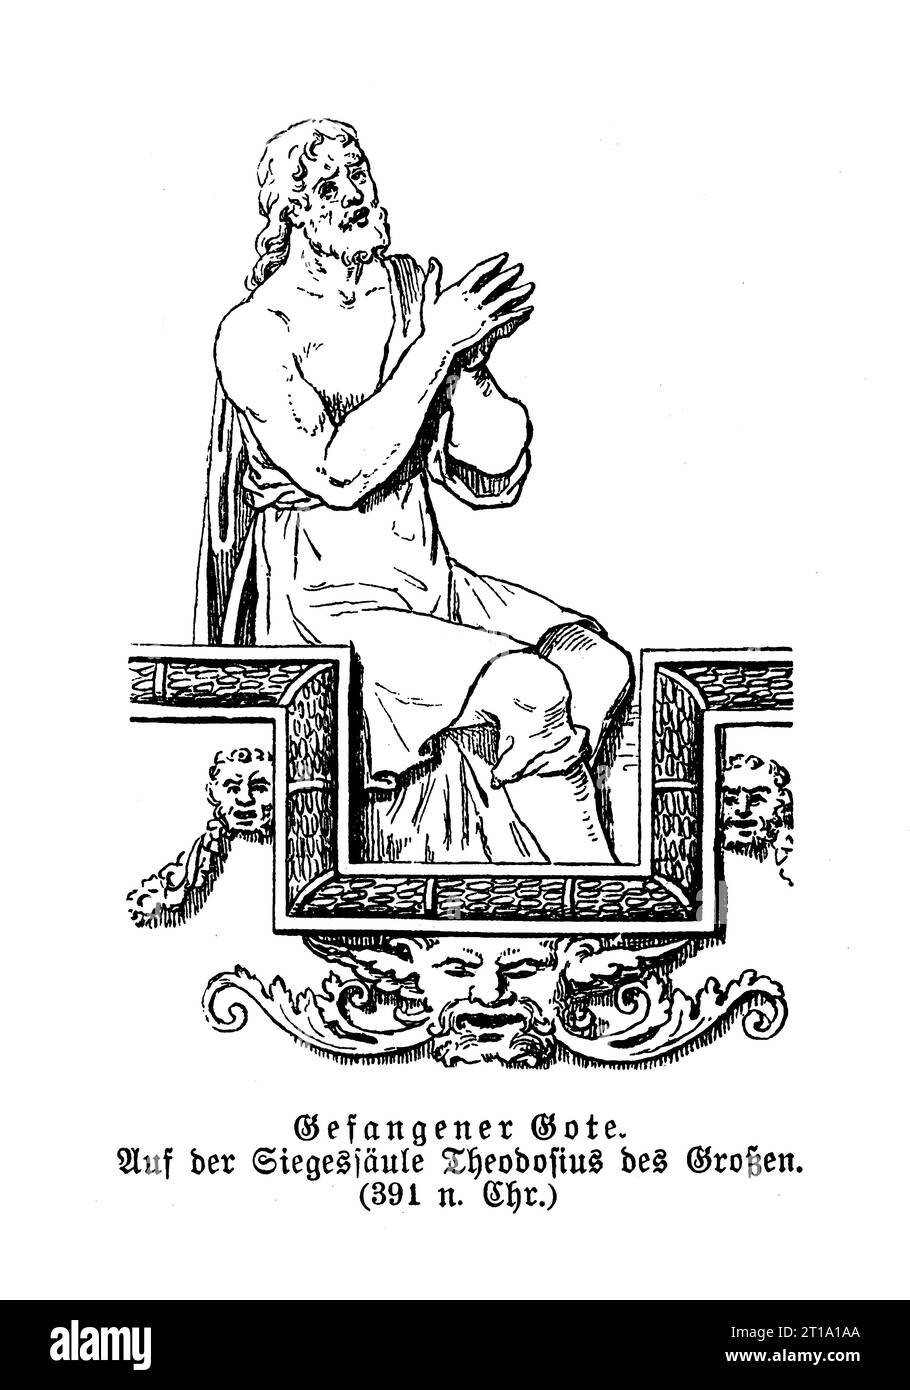 Prisonnier Goth allemand, détail de la grande colonne triomphale de Costantinople de Théodose le Grand, empereur romain, 4e siècle Banque D'Images